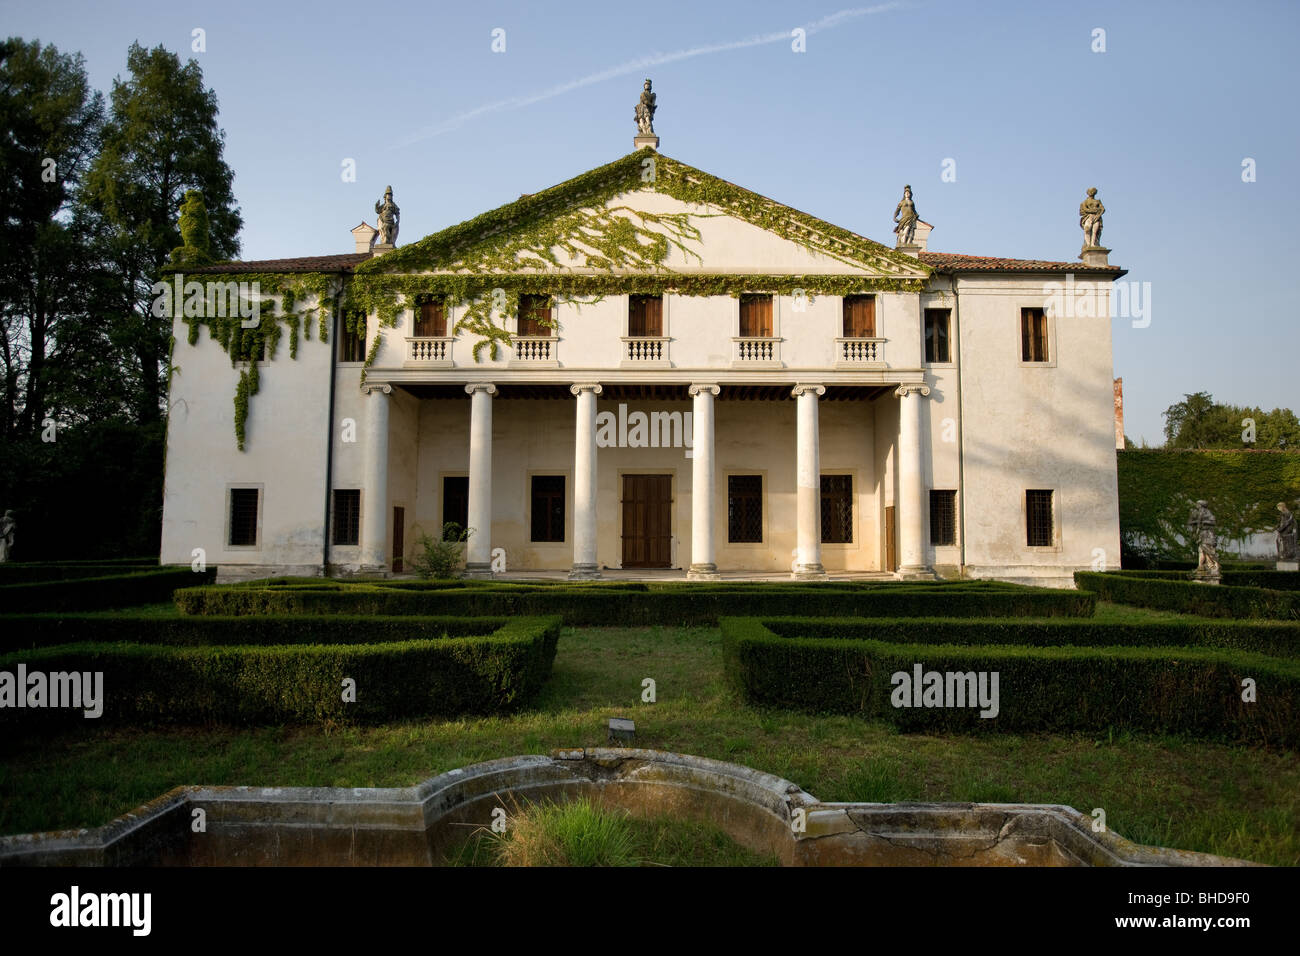 Europa Italia Veneto Vicenza Villa Valmarana Lisiera Andrea Palladio statue giardino Patrimonio Mondiale UNESCO storia dell'architettura. Foto Stock